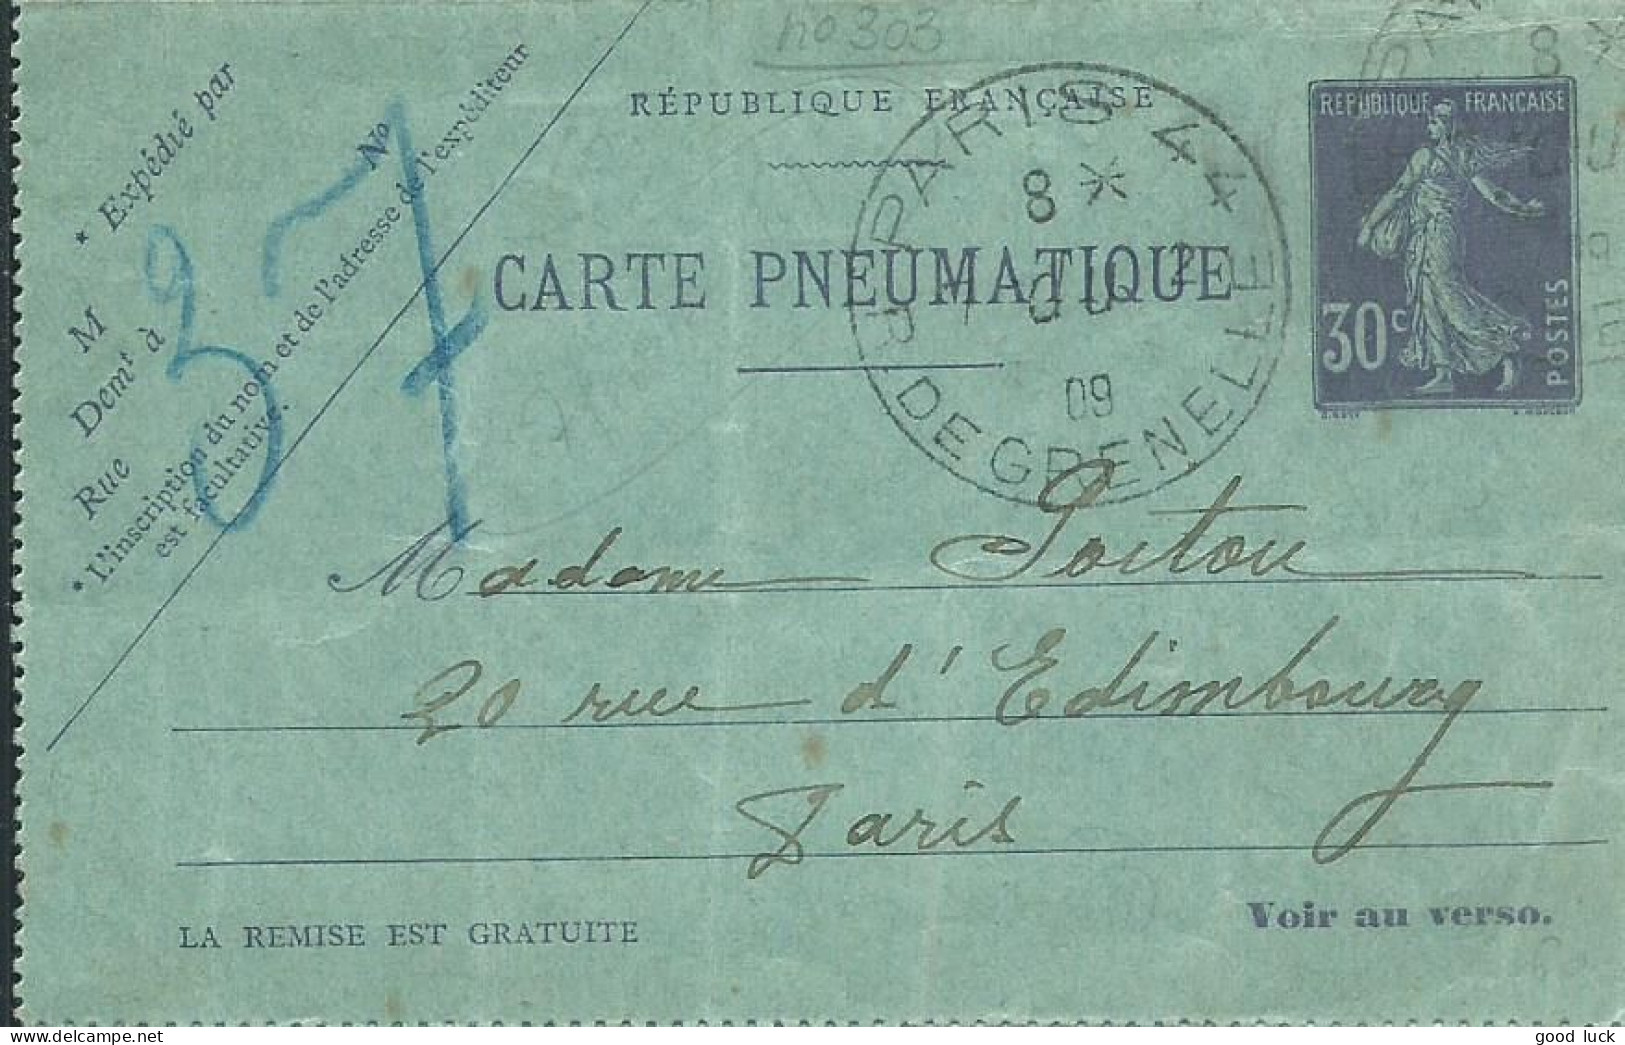 FRANCE CARTE SEMEUSE 30c PARIS 44 POUR PARIS DE 1909 LETTRE COVER - Pneumatic Post